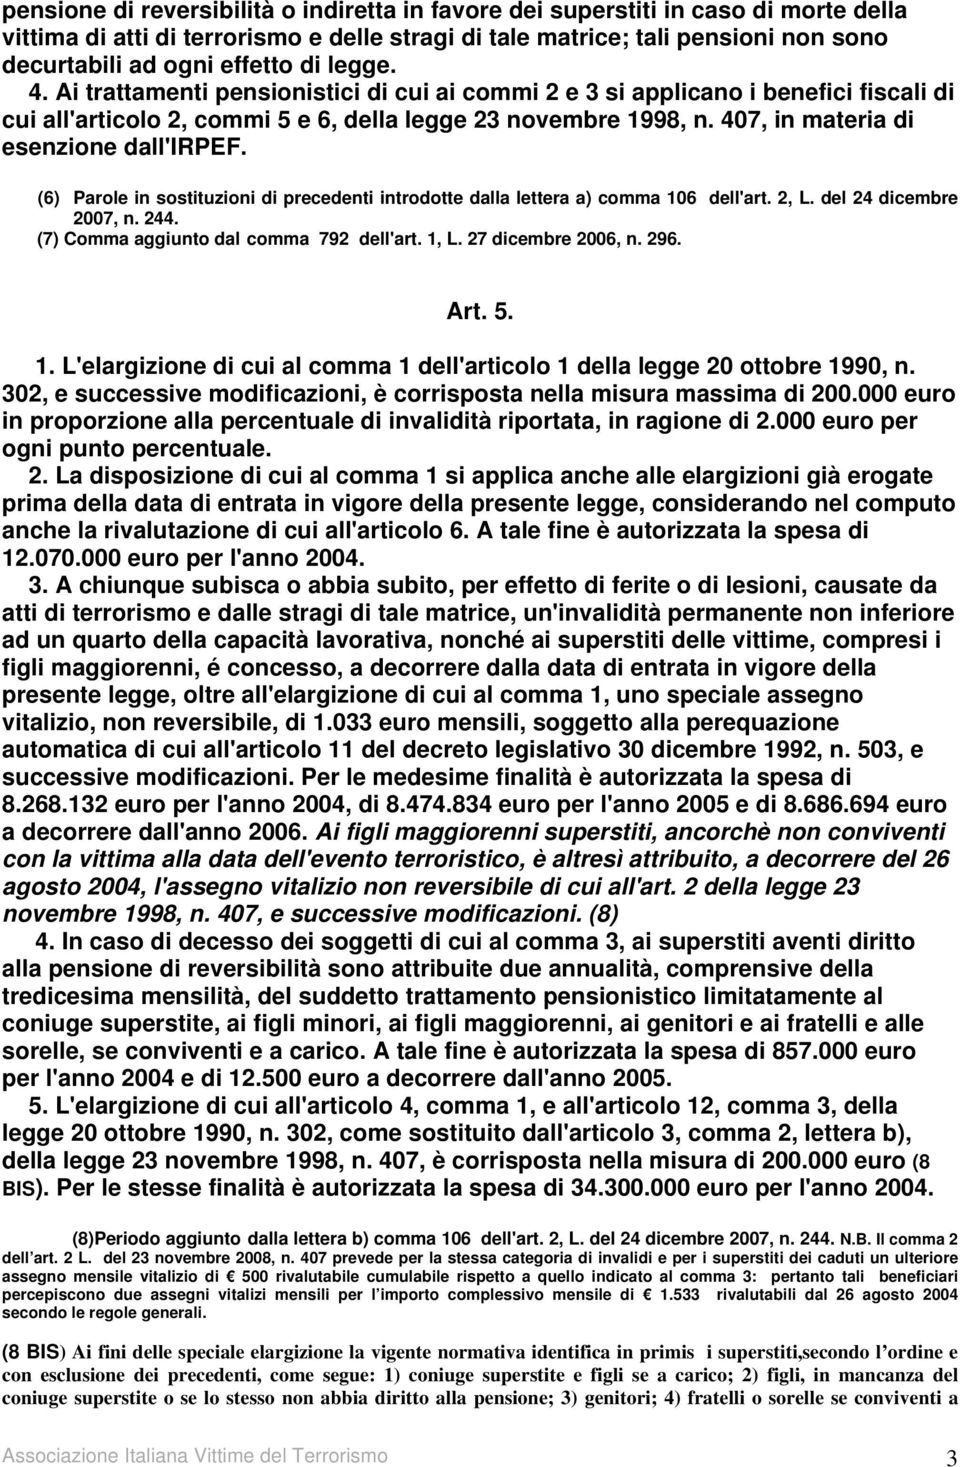 407, in materia di esenzione dall'irpef. (6) Parole in sostituzioni di precedenti introdotte dalla lettera a) comma 106 dell'art. 2, L. del 24 dicembre 2007, n. 244.